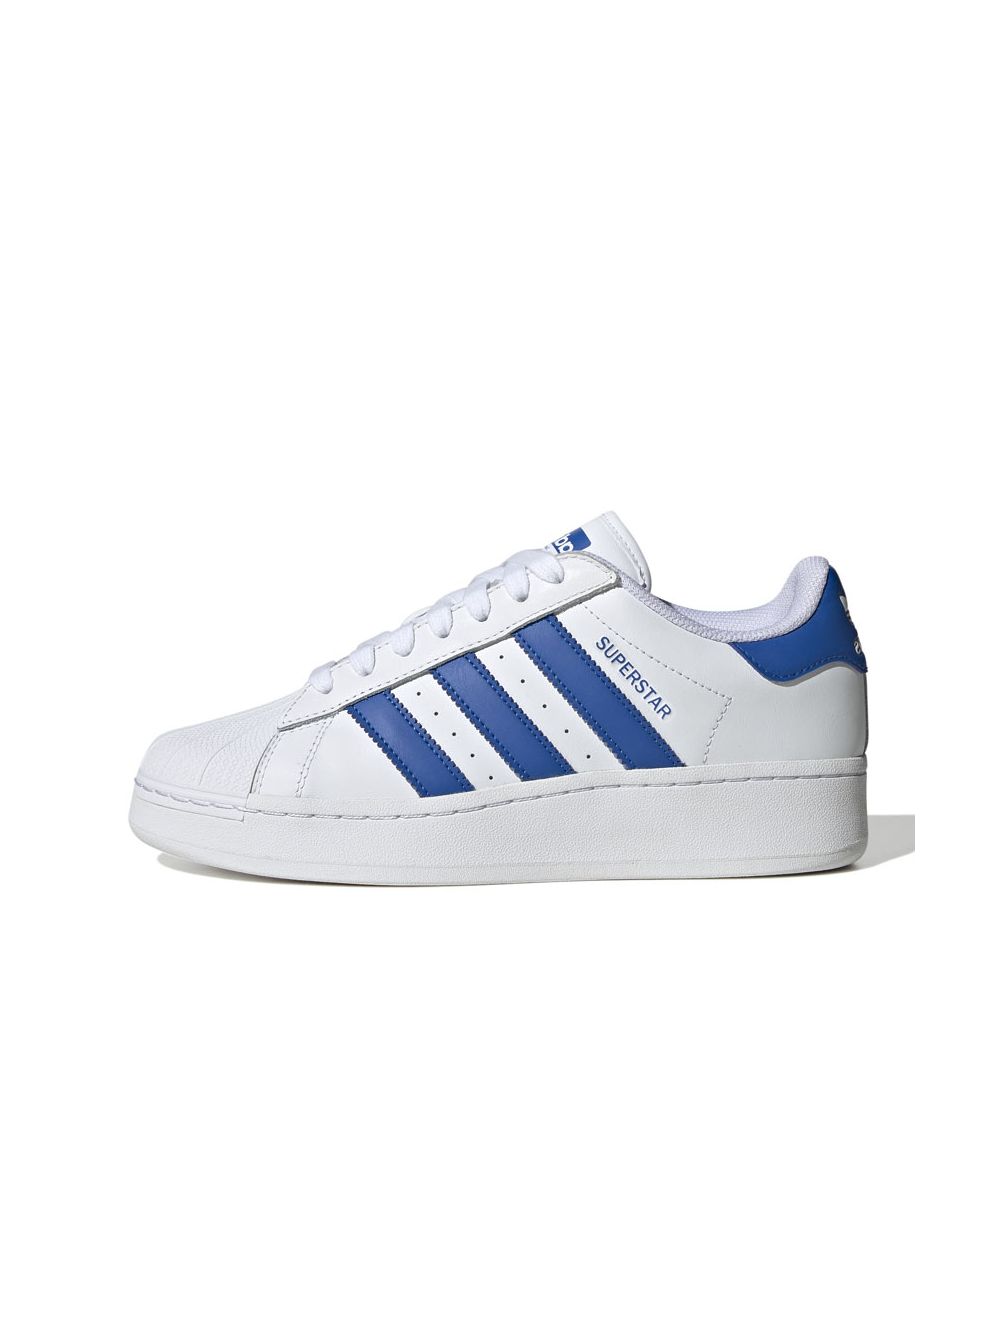 adidas Originals Adicolor 70s Gazelle sneakers in blue | ASOS